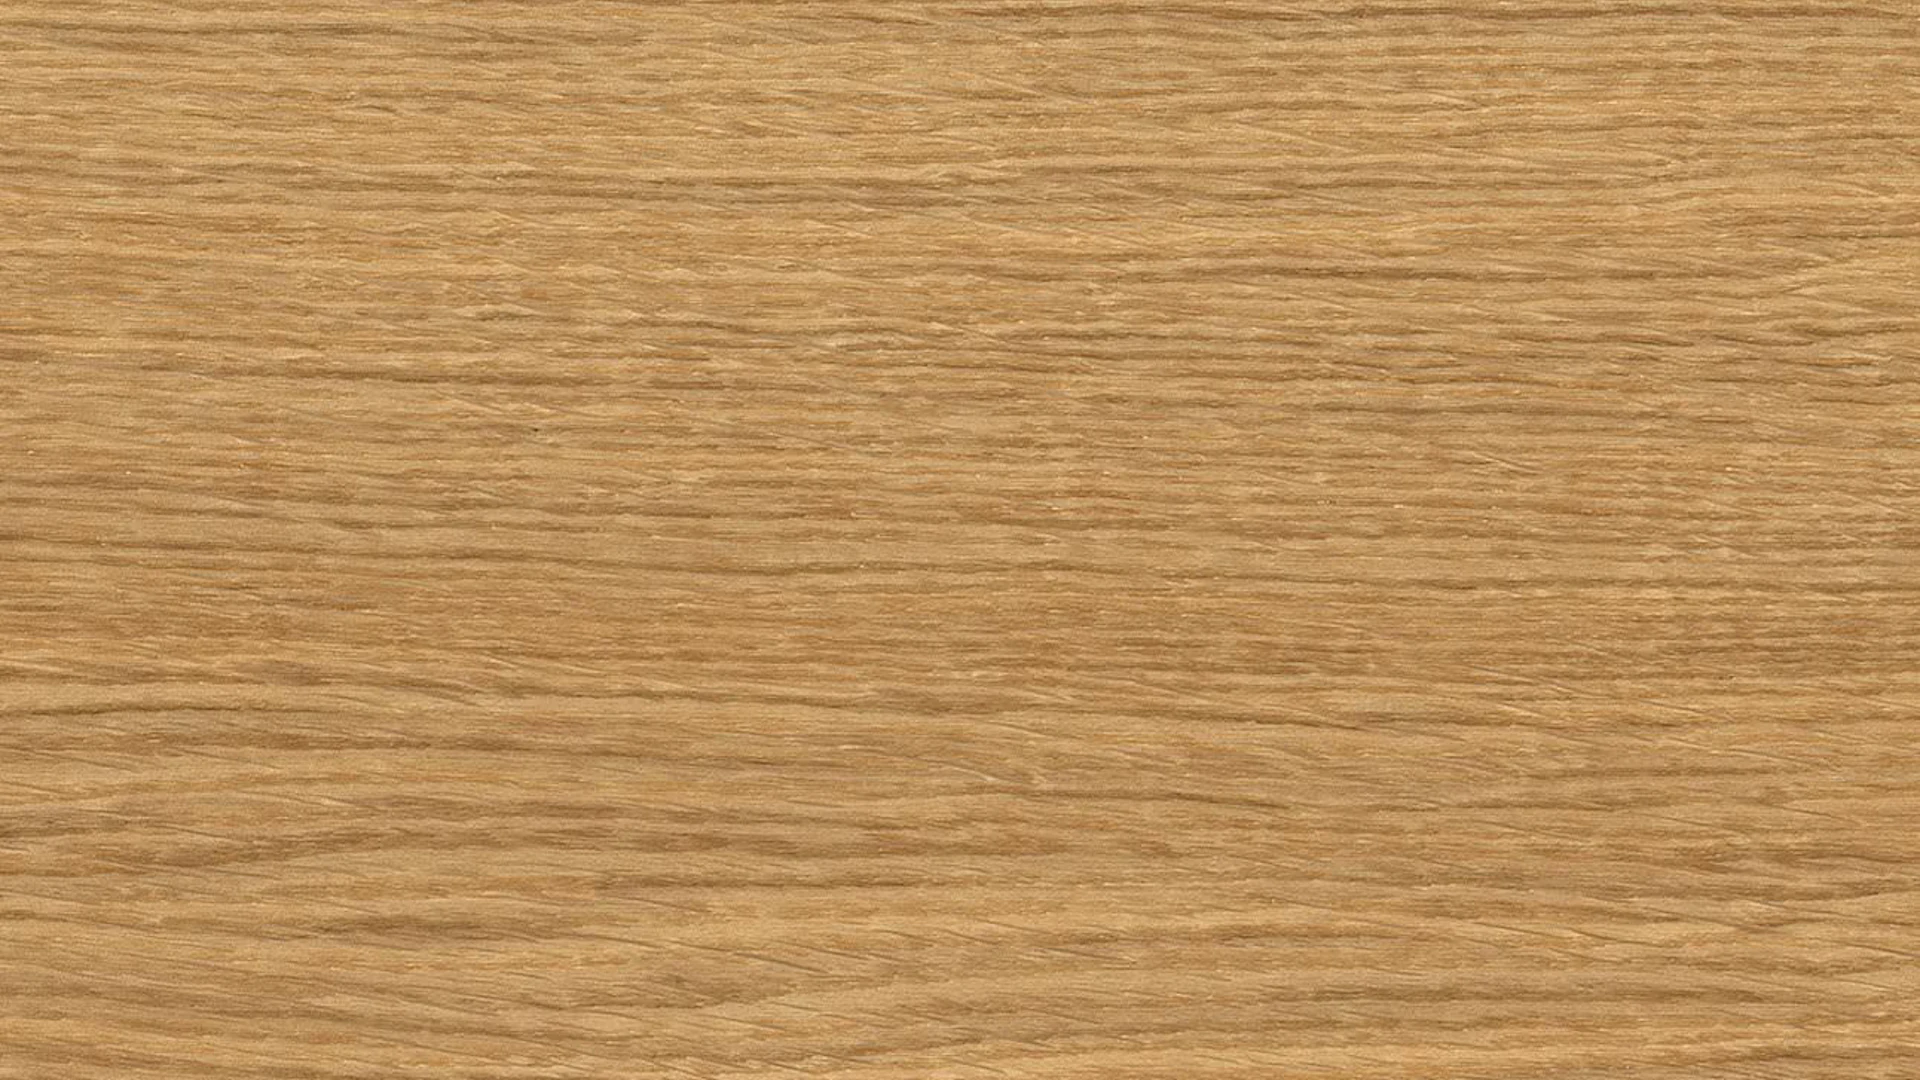 Haro Parquet Flooring - Series 4000 permaDur Exclusive Oak (524680)